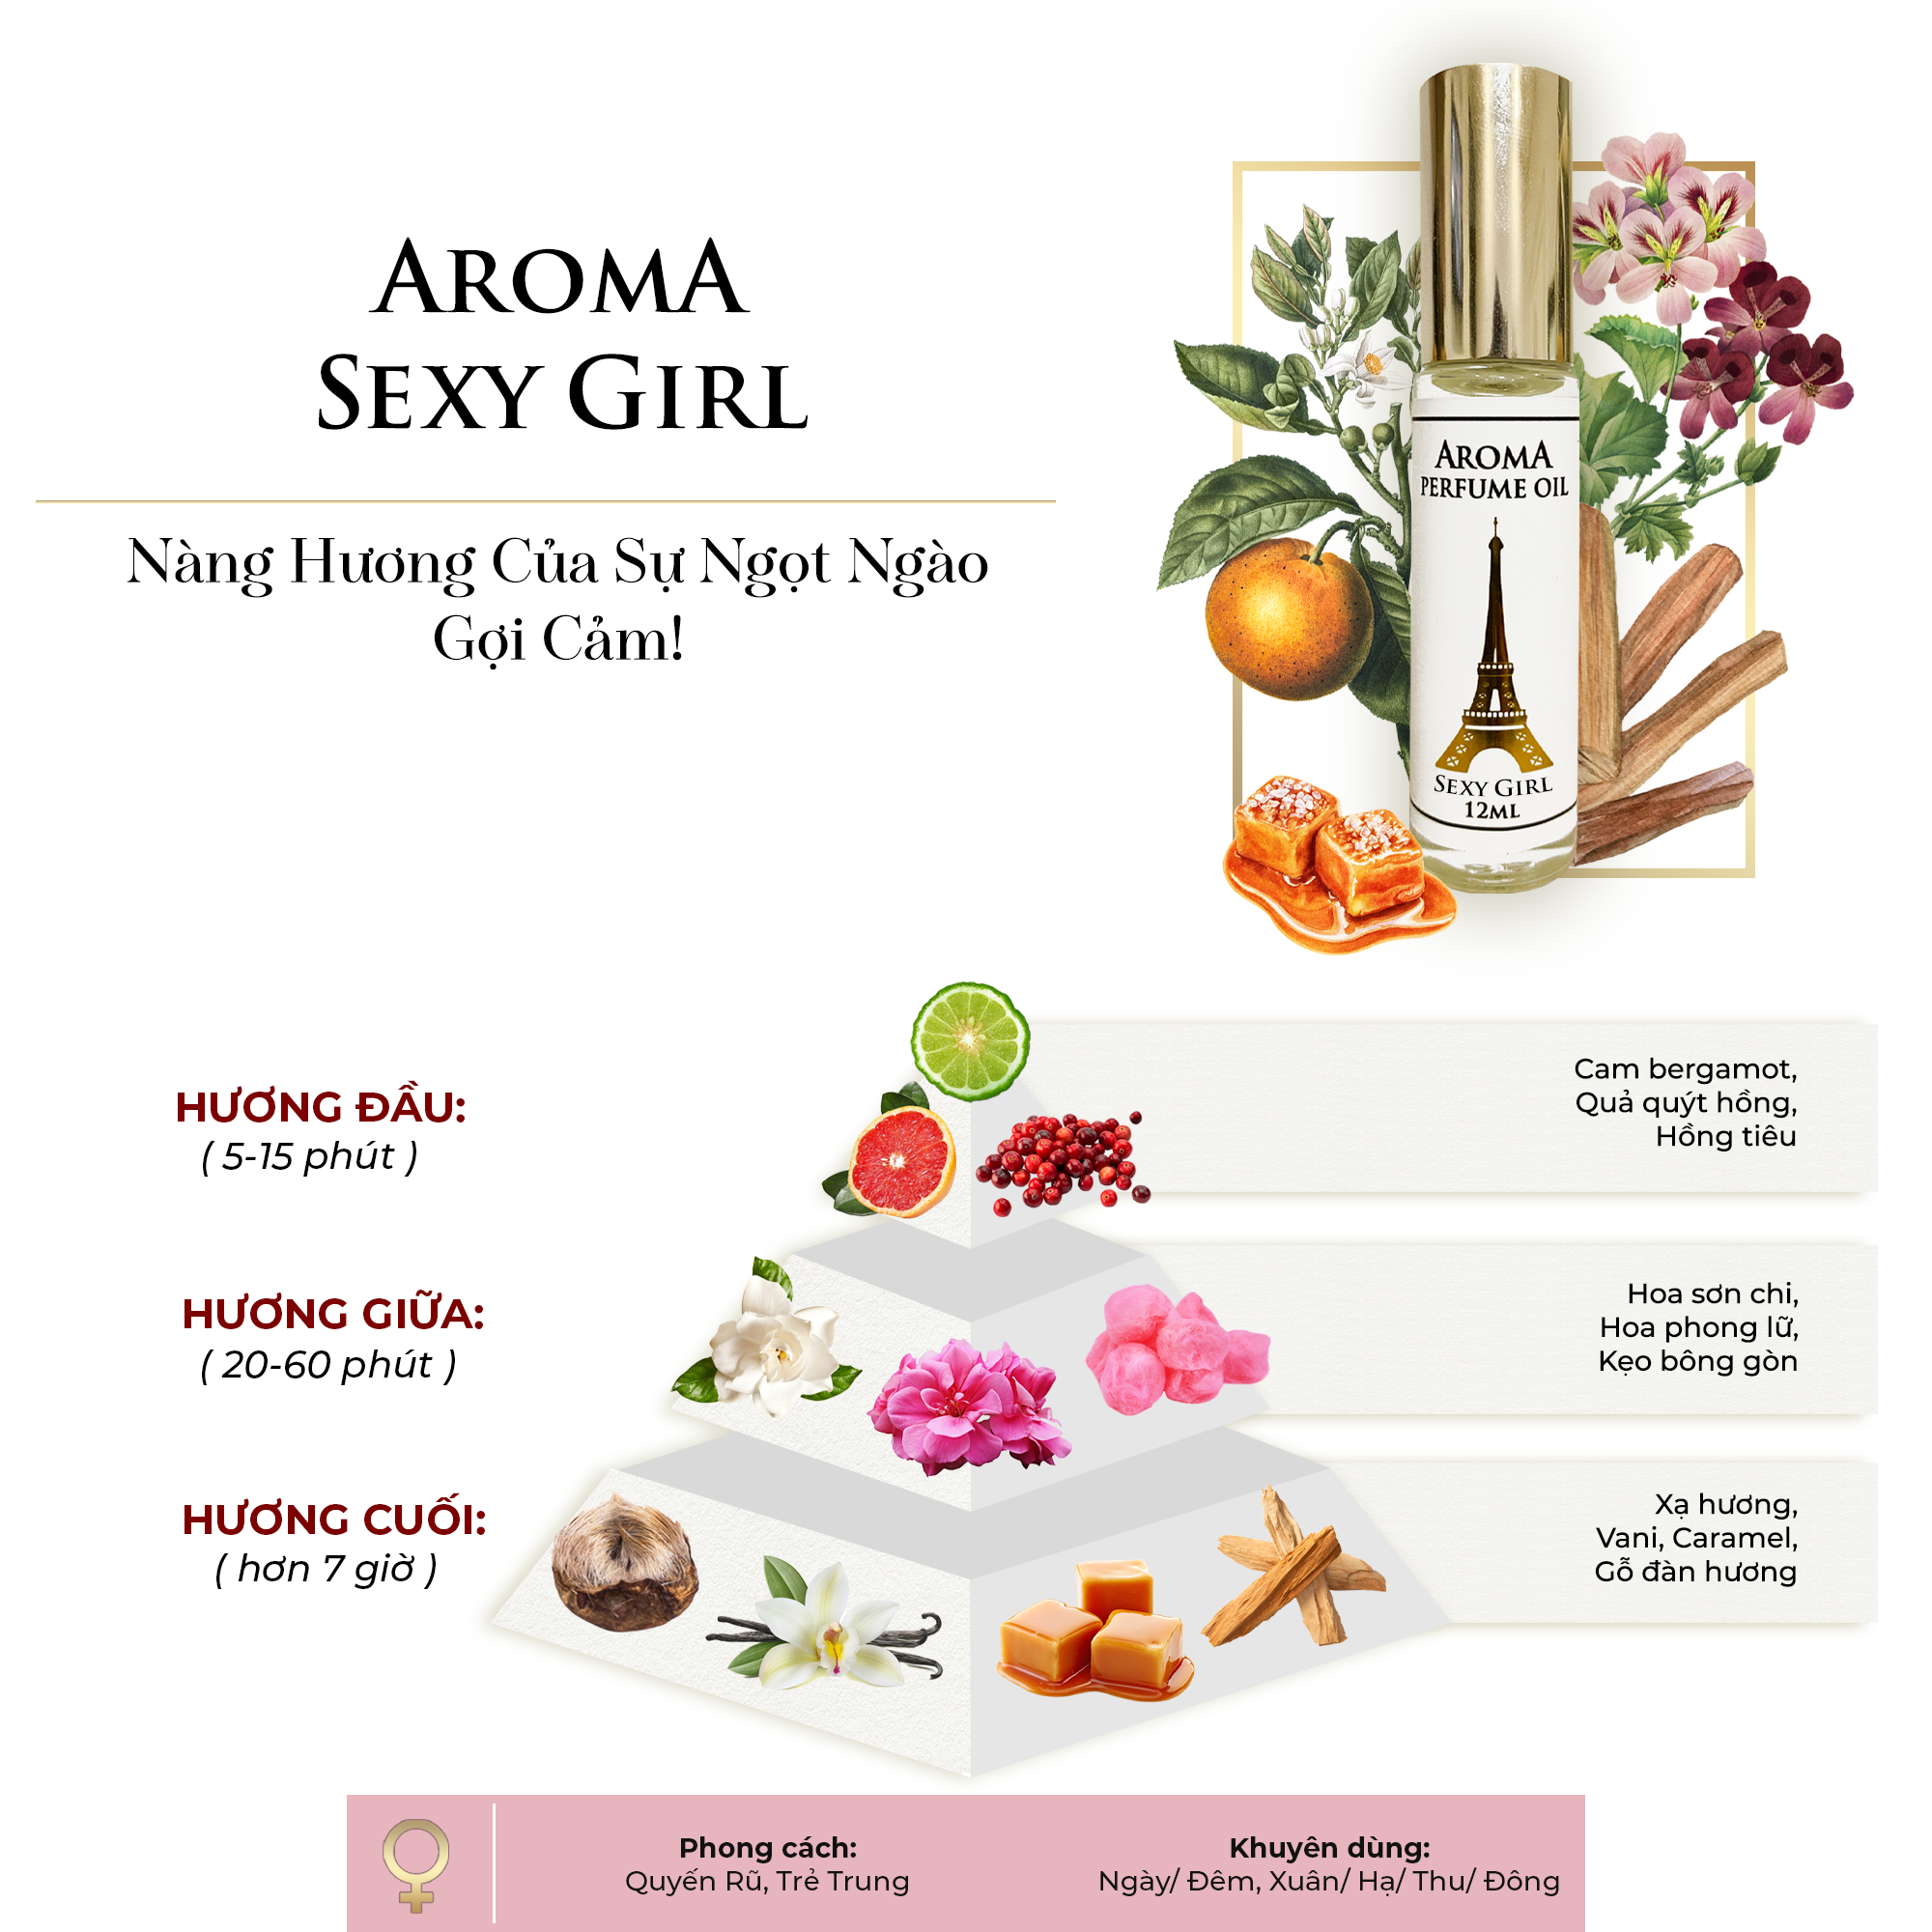 Aroma Sexy Girl – Tinh Dầu Nước Hoa Pháp Dạng Lăn 12ml